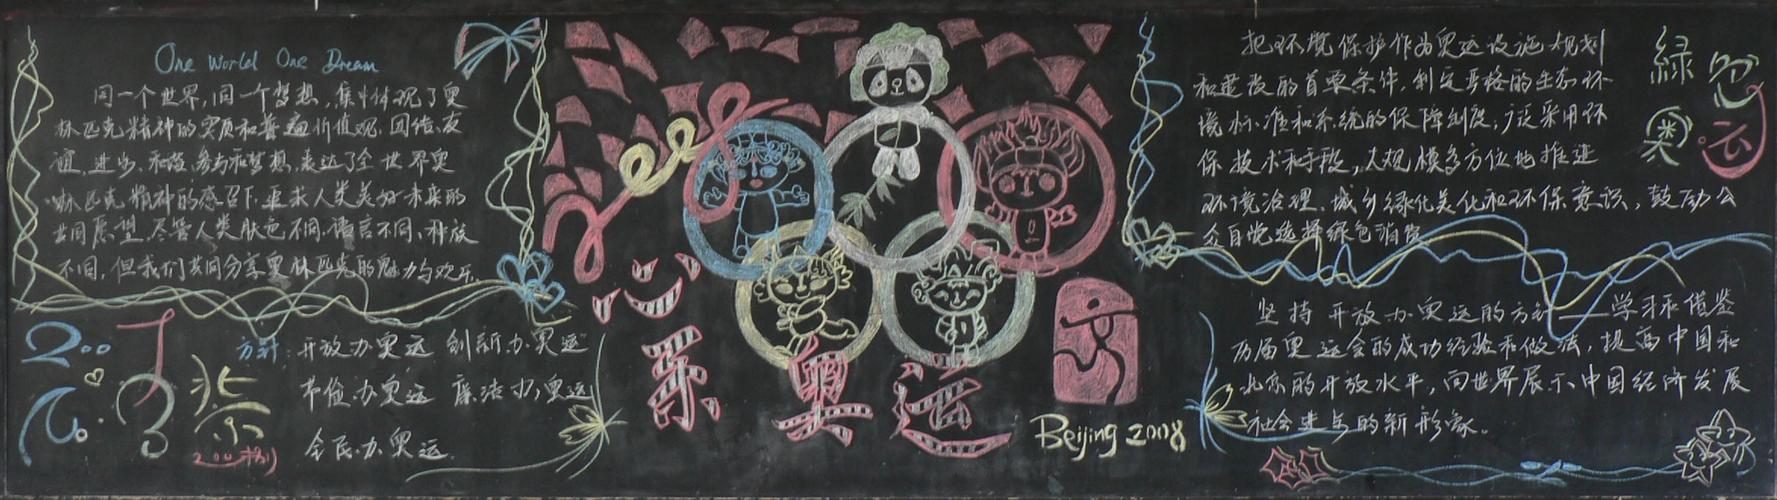 冬季奥运会黑板报 冬季奥运会黑板报素材